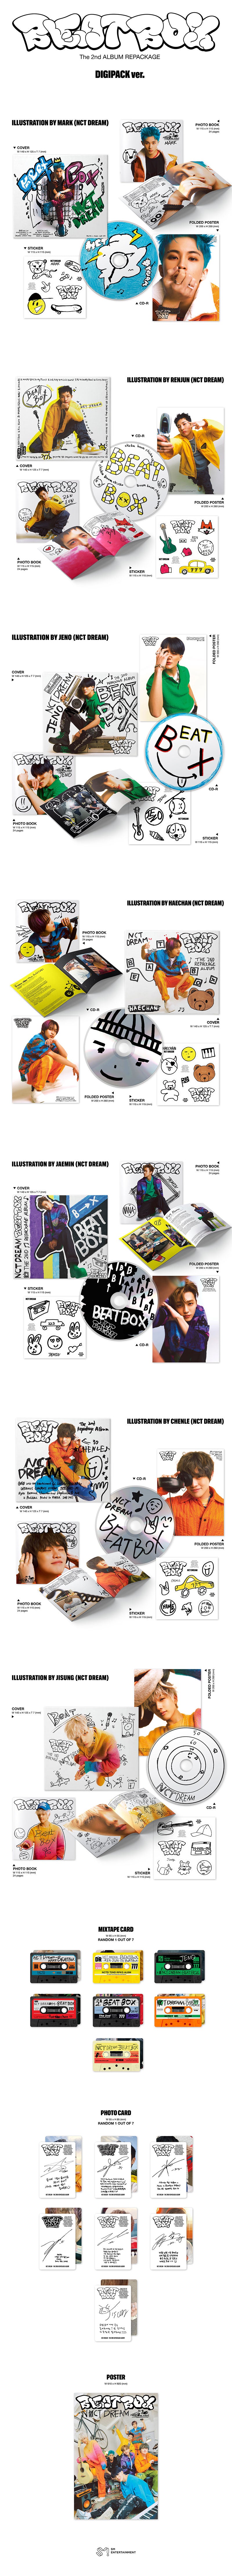 NCT DREAM - Beatbox [2nd Album Repackage - Digipack Ver.]